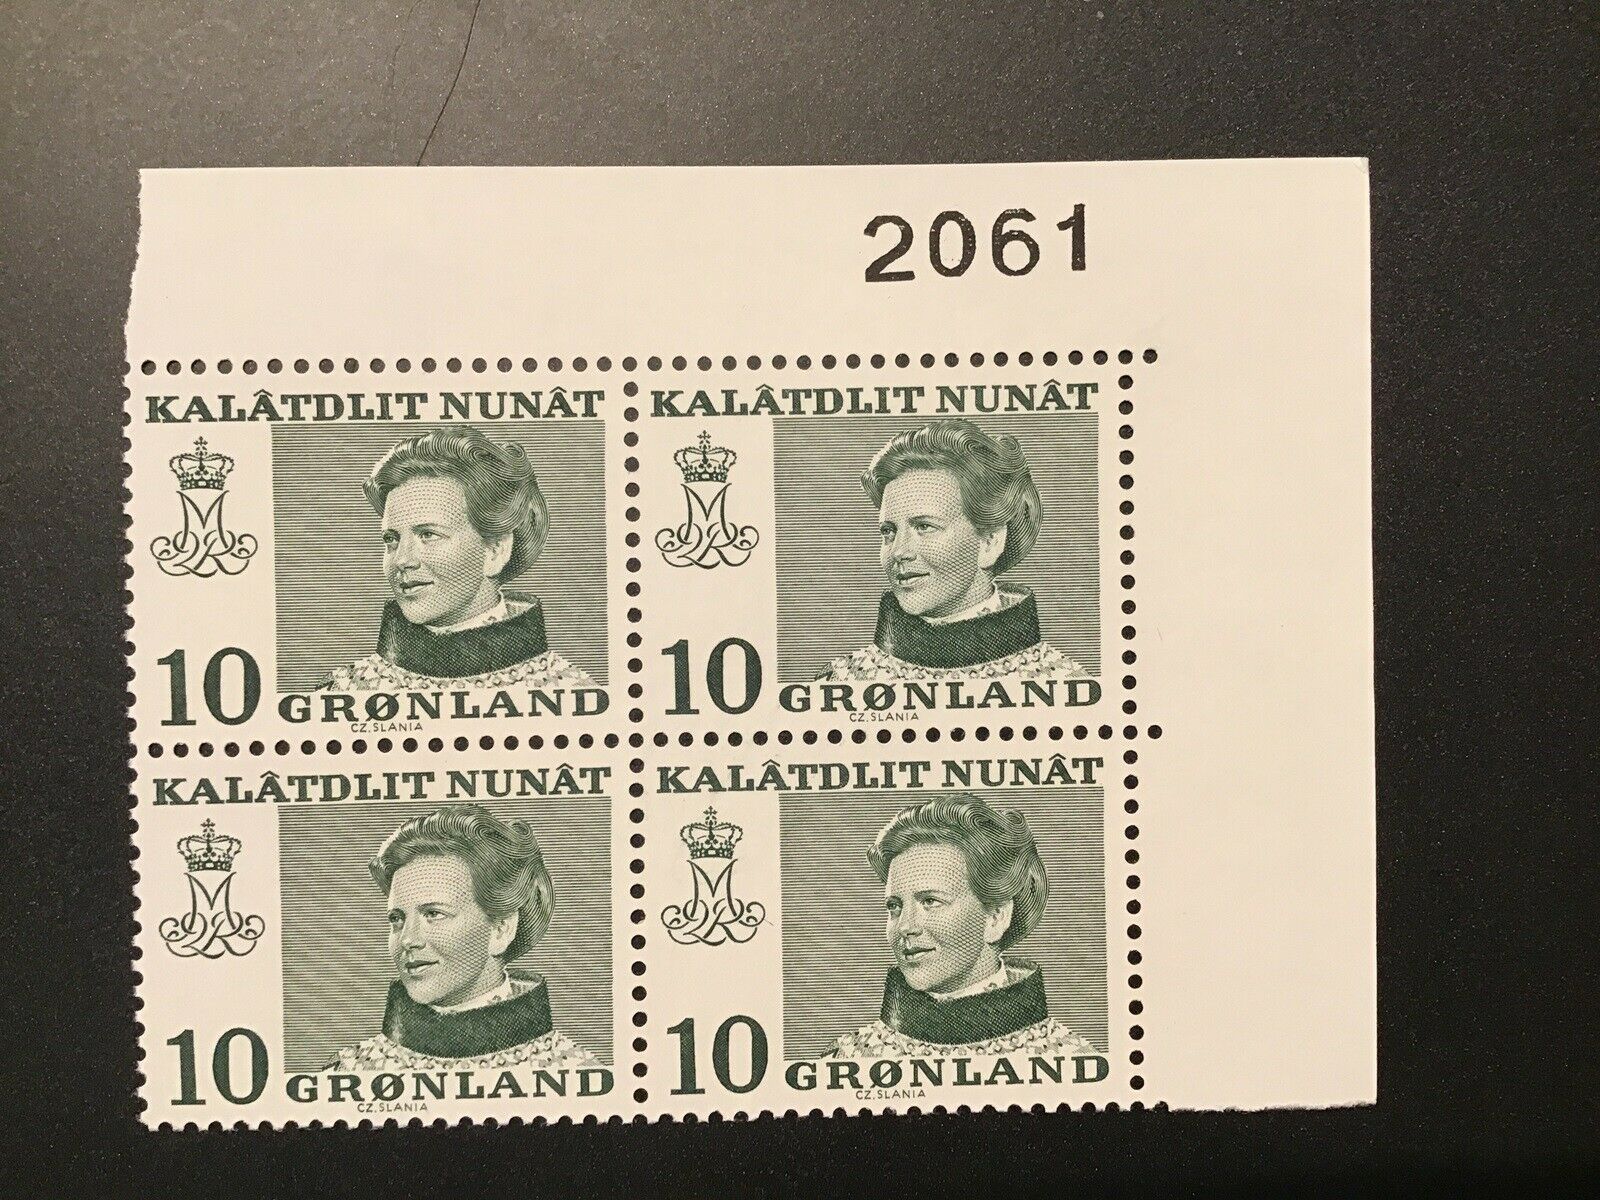 Grønland, postfrisk, AFA nr. 84 fireblok med øvre marginal